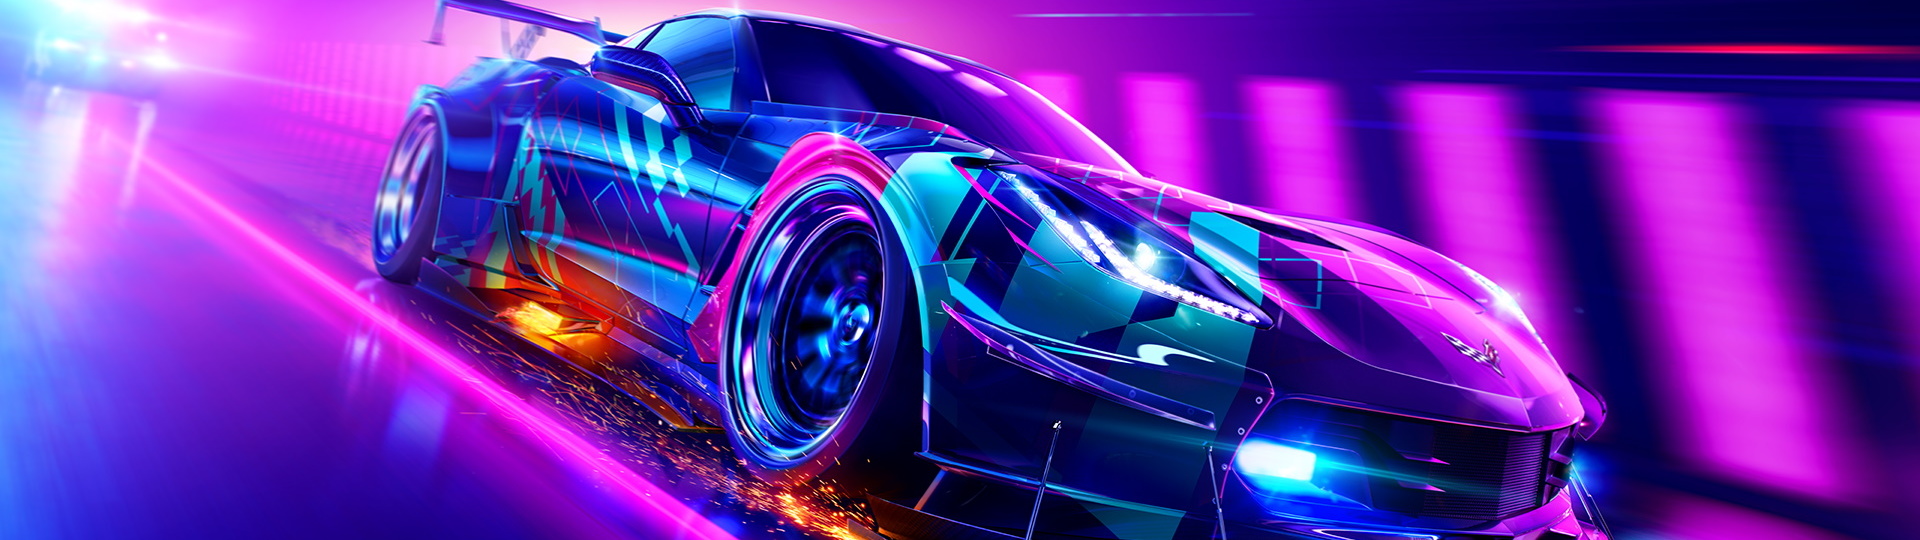 5. října se dozvíme něco nového ohledně série Need for Speed | Spekulace